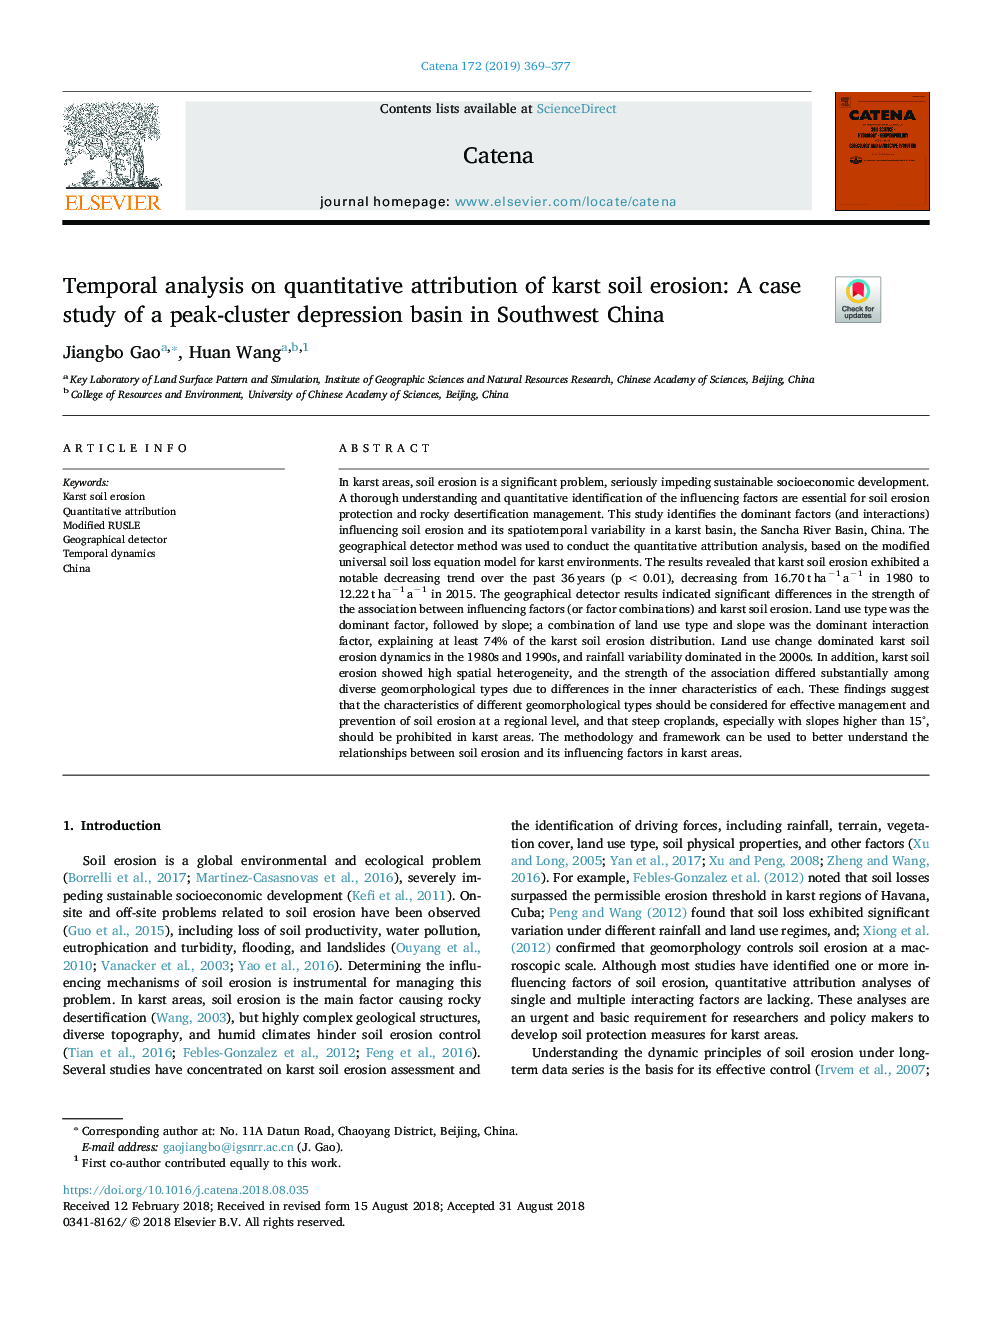 تجزیه و تحلیل موقتی در ارزیابی کمی از فرسایش خاک کارست: مطالعه موردی یک حوضه افسردگی پیک خزر در جنوب غربی چین